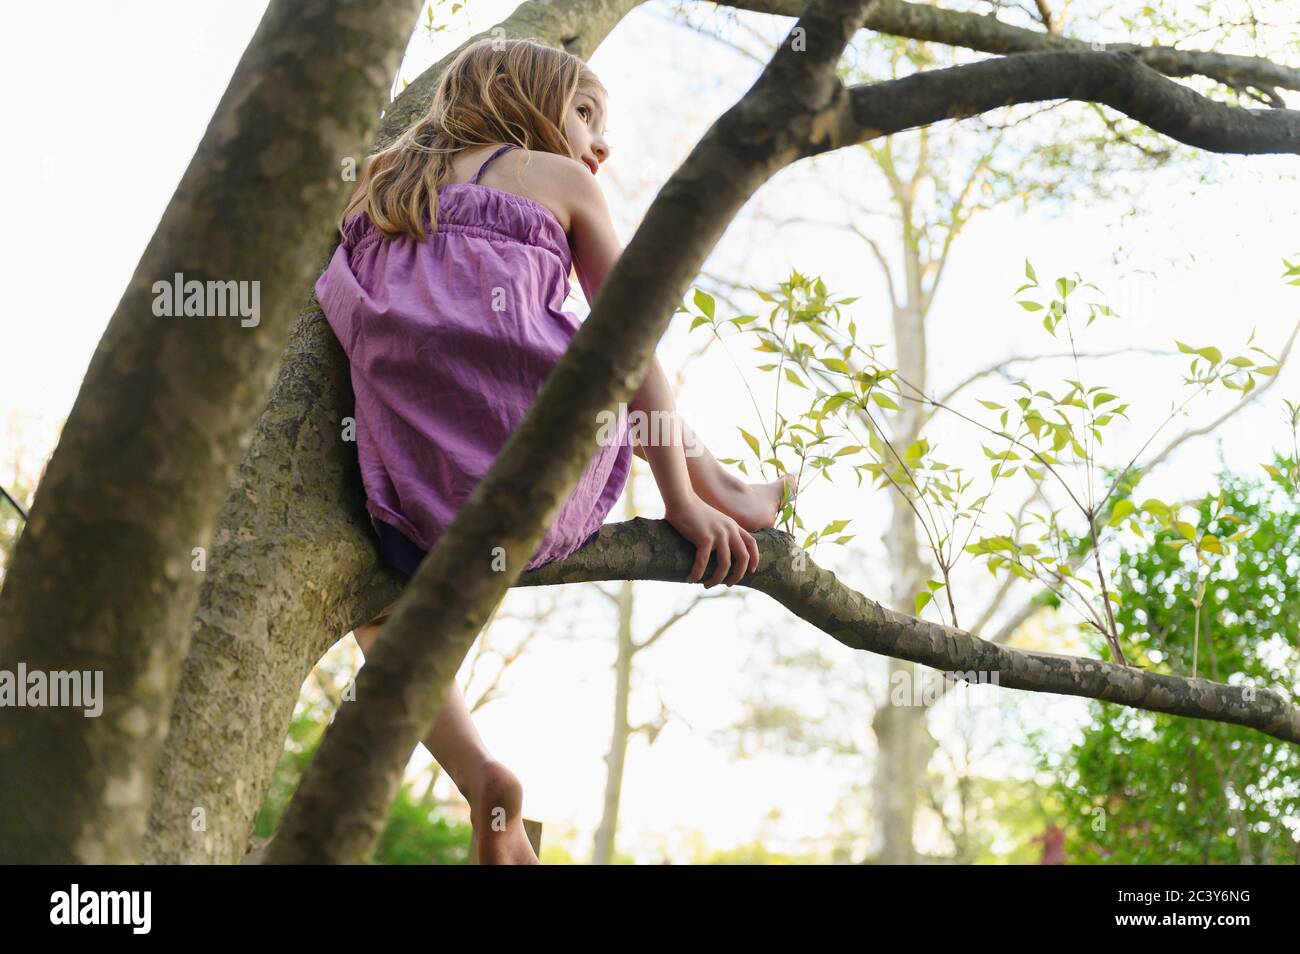 Fille (6-7) assise dans un arbre Banque D'Images